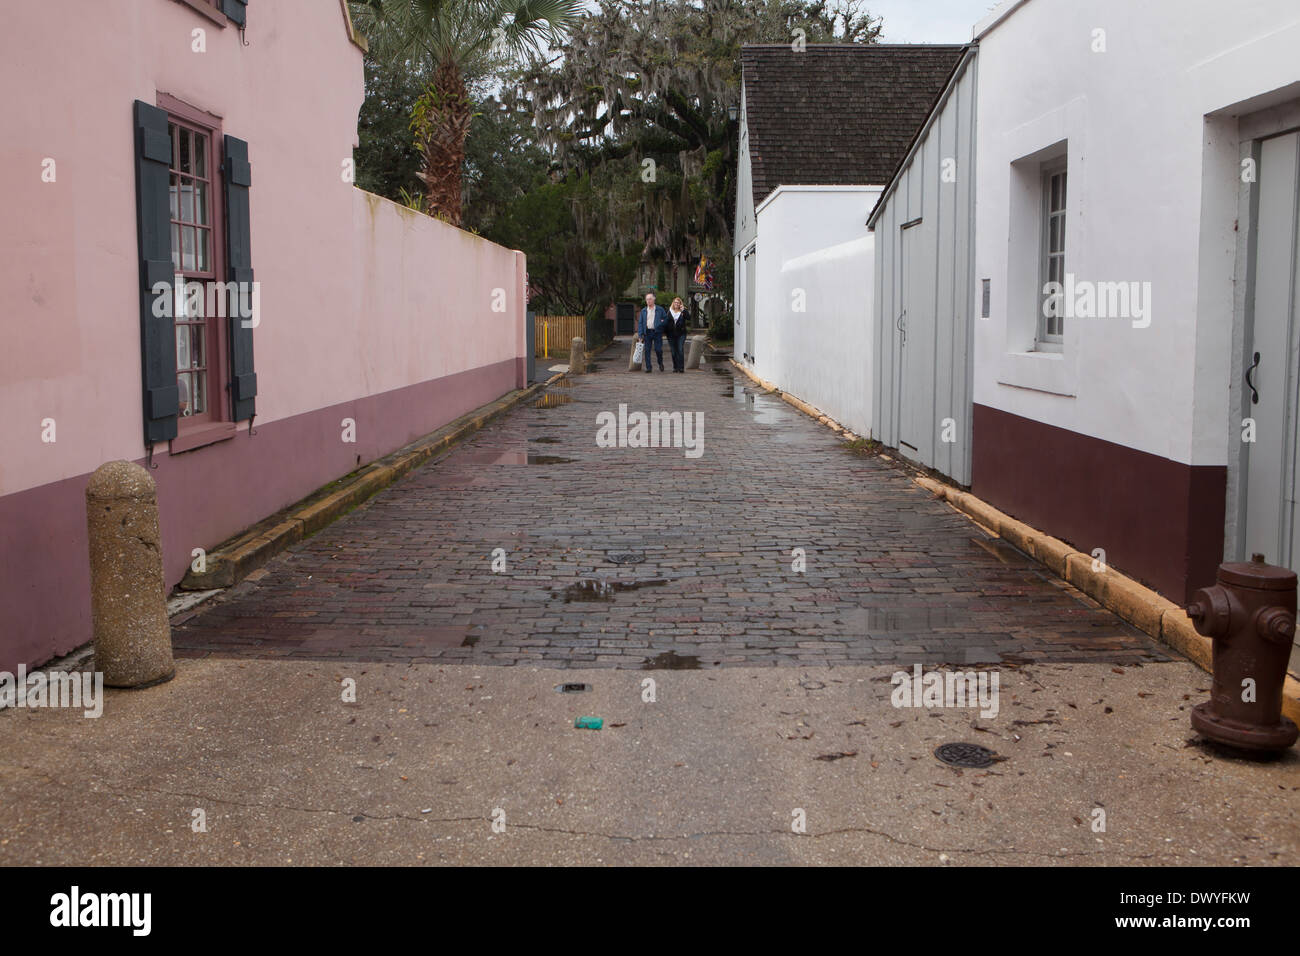 Una angosta calle adoquinada es retratada en el distrito histórico de San Agustín, Florida Foto de stock